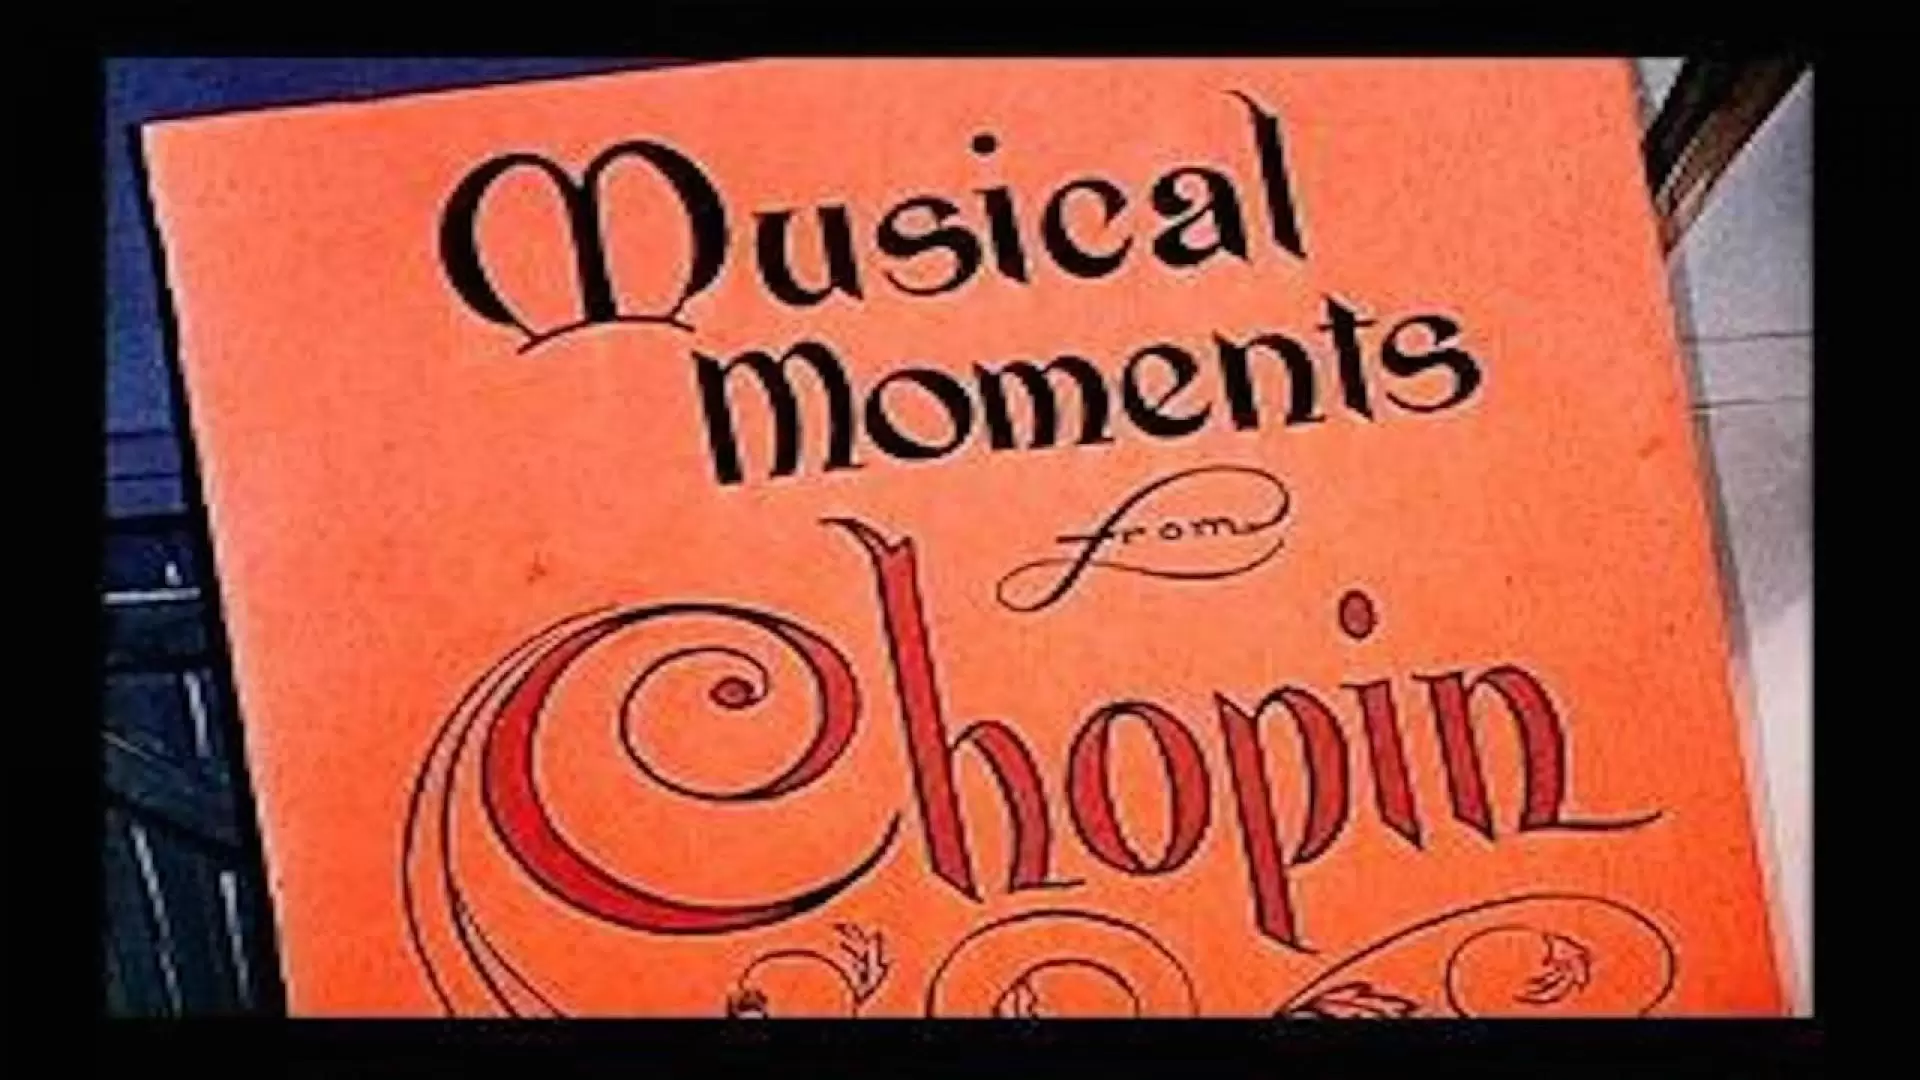 دانلود انیمیشن Musical Moments from Chopin 1946